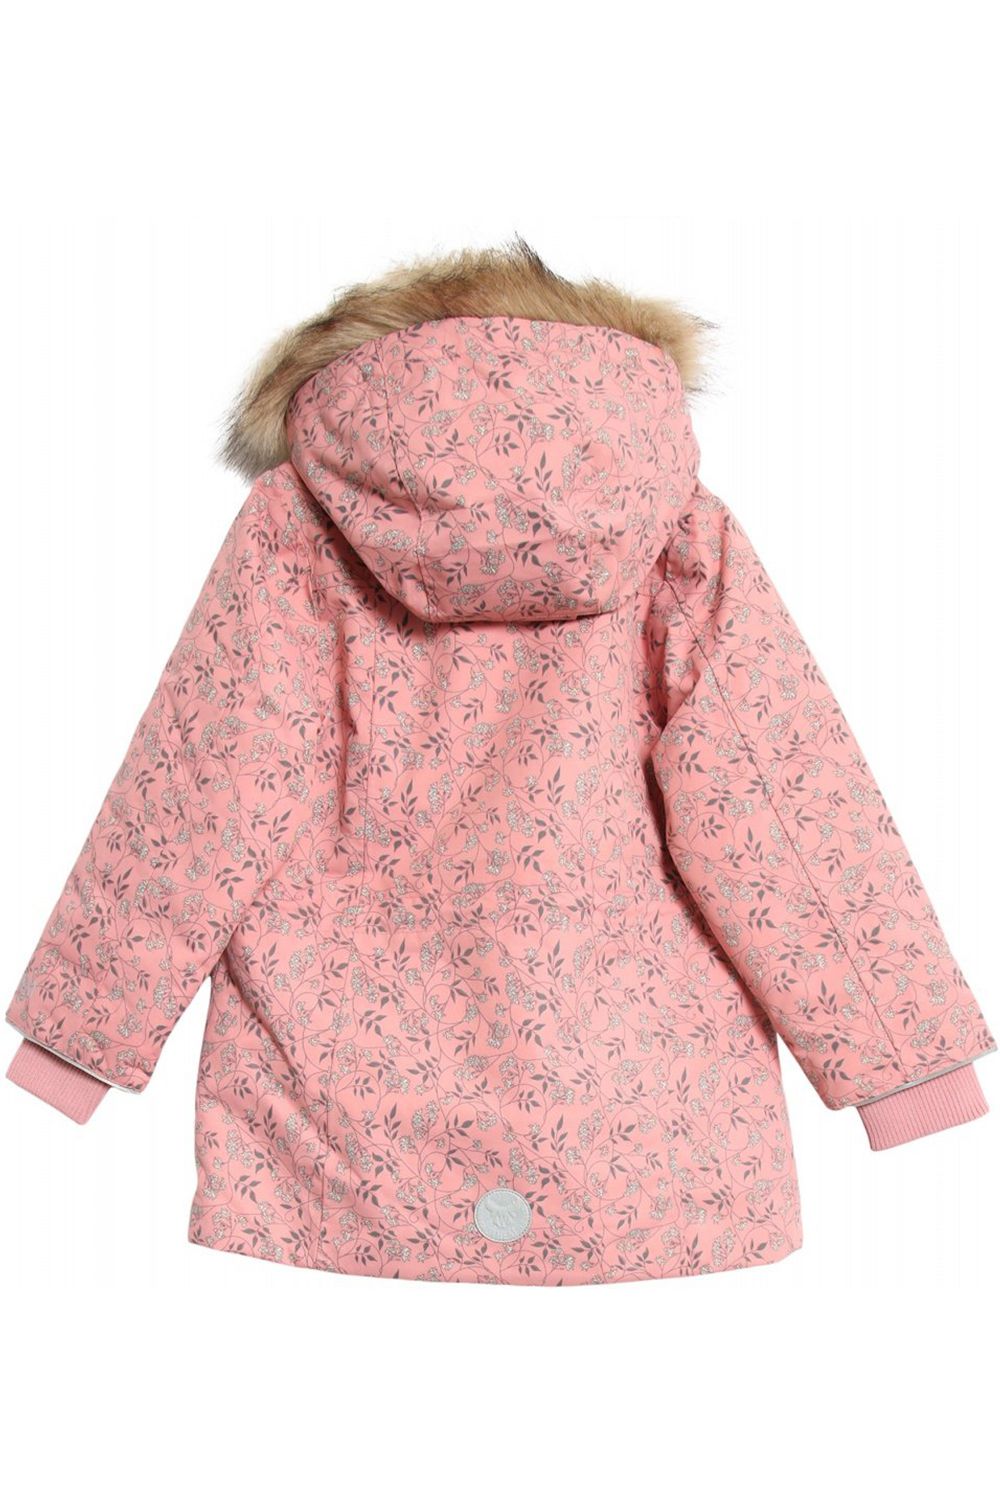 Куртка Wheat outerwear, размер 98, цвет розовый - фото 2